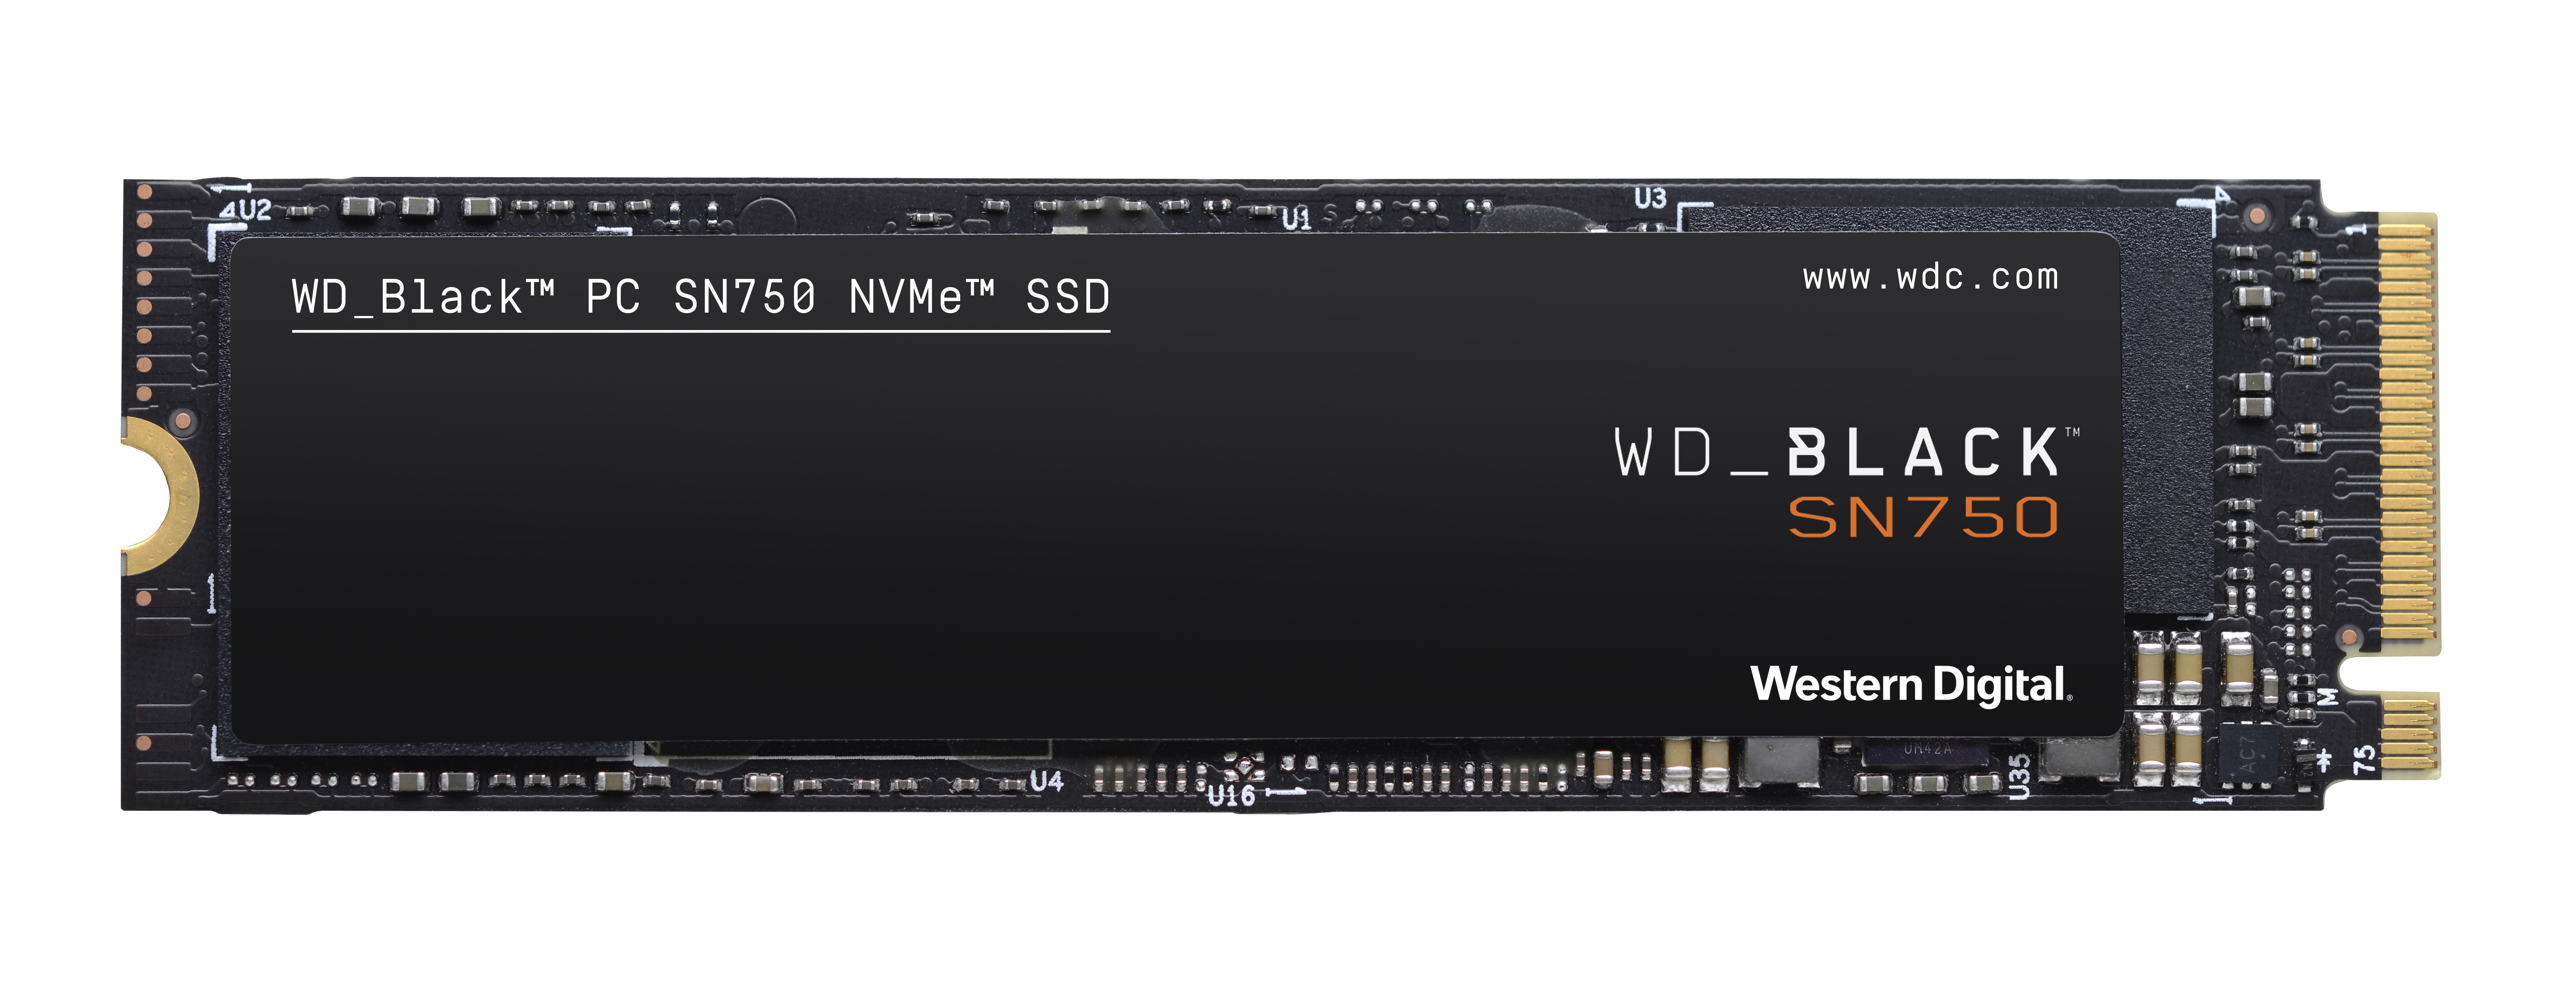 GB NVMe™ SSD, WD_BLACK Speicher Interner intern M.2, Speicher, 250 SN750